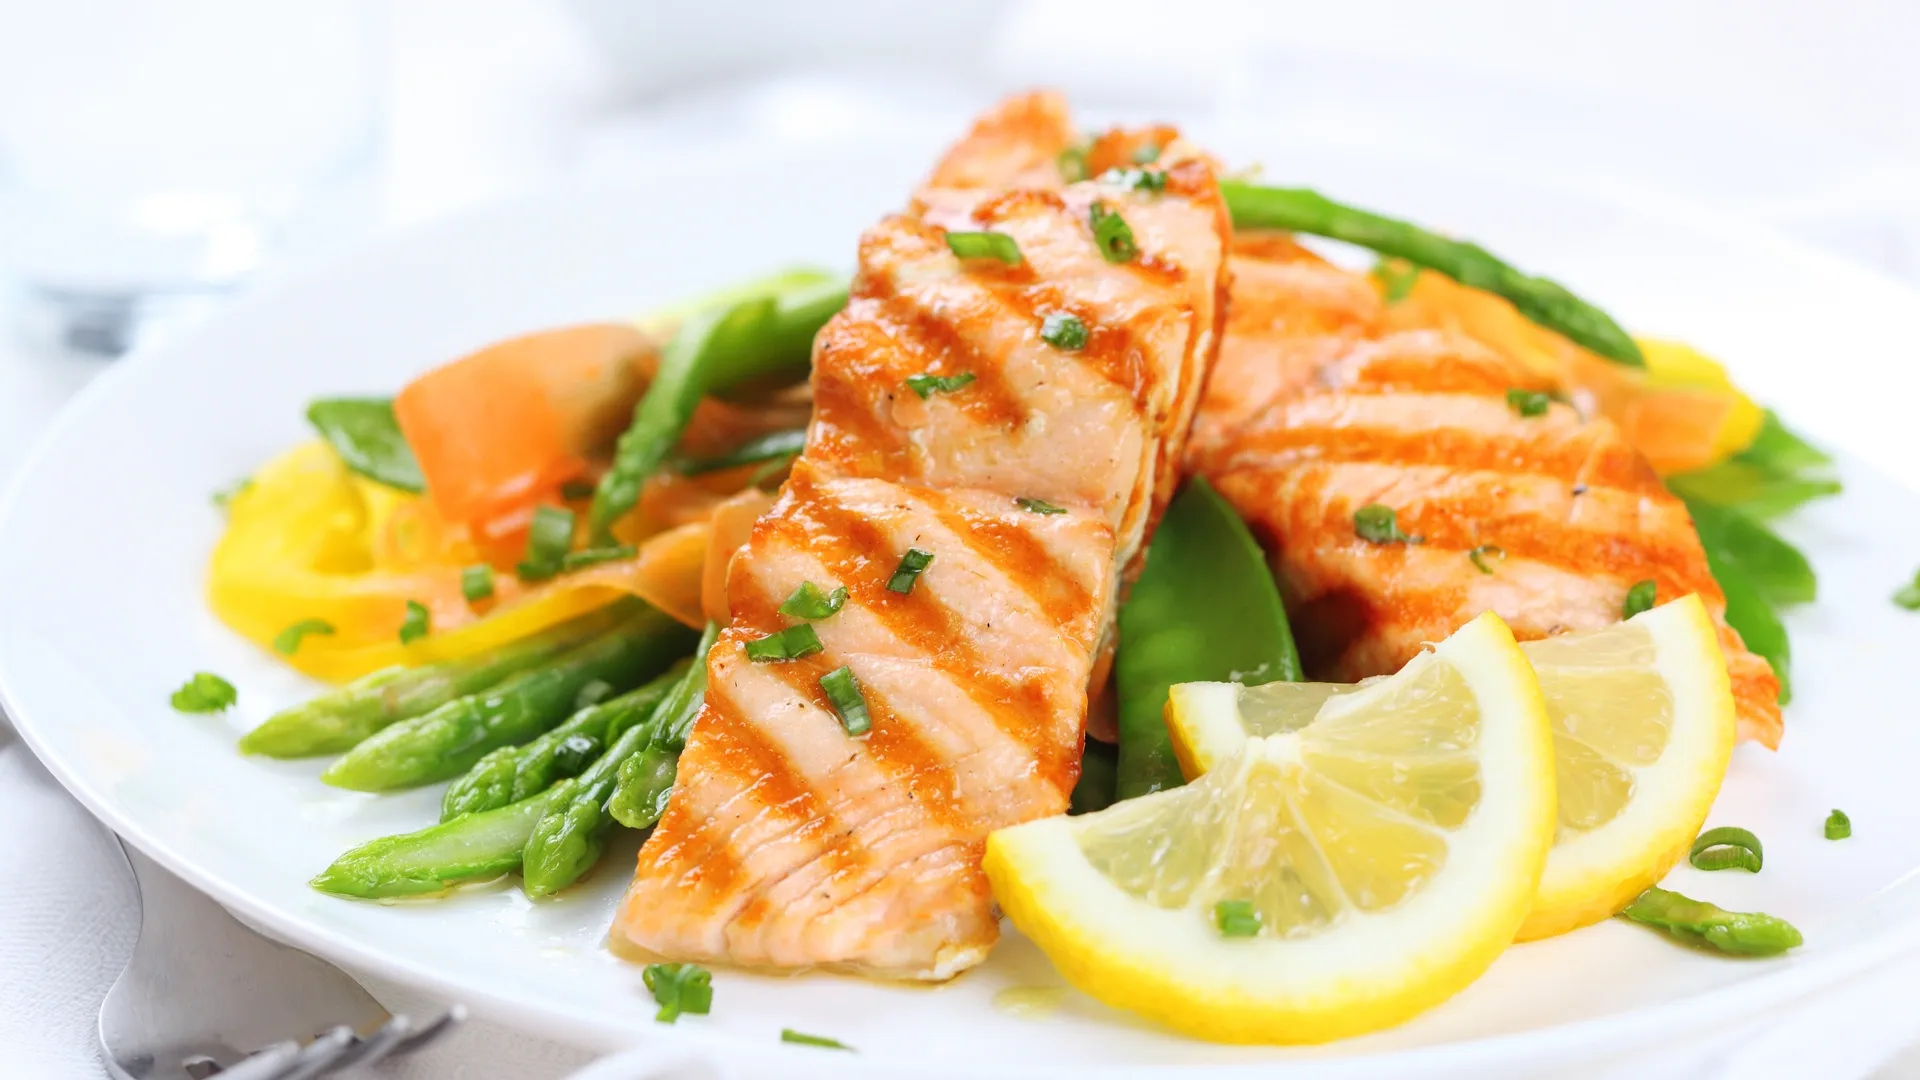 Полезное питание увеличивает продолжительность жизни! Фото: Gaak / Shutterstock.com